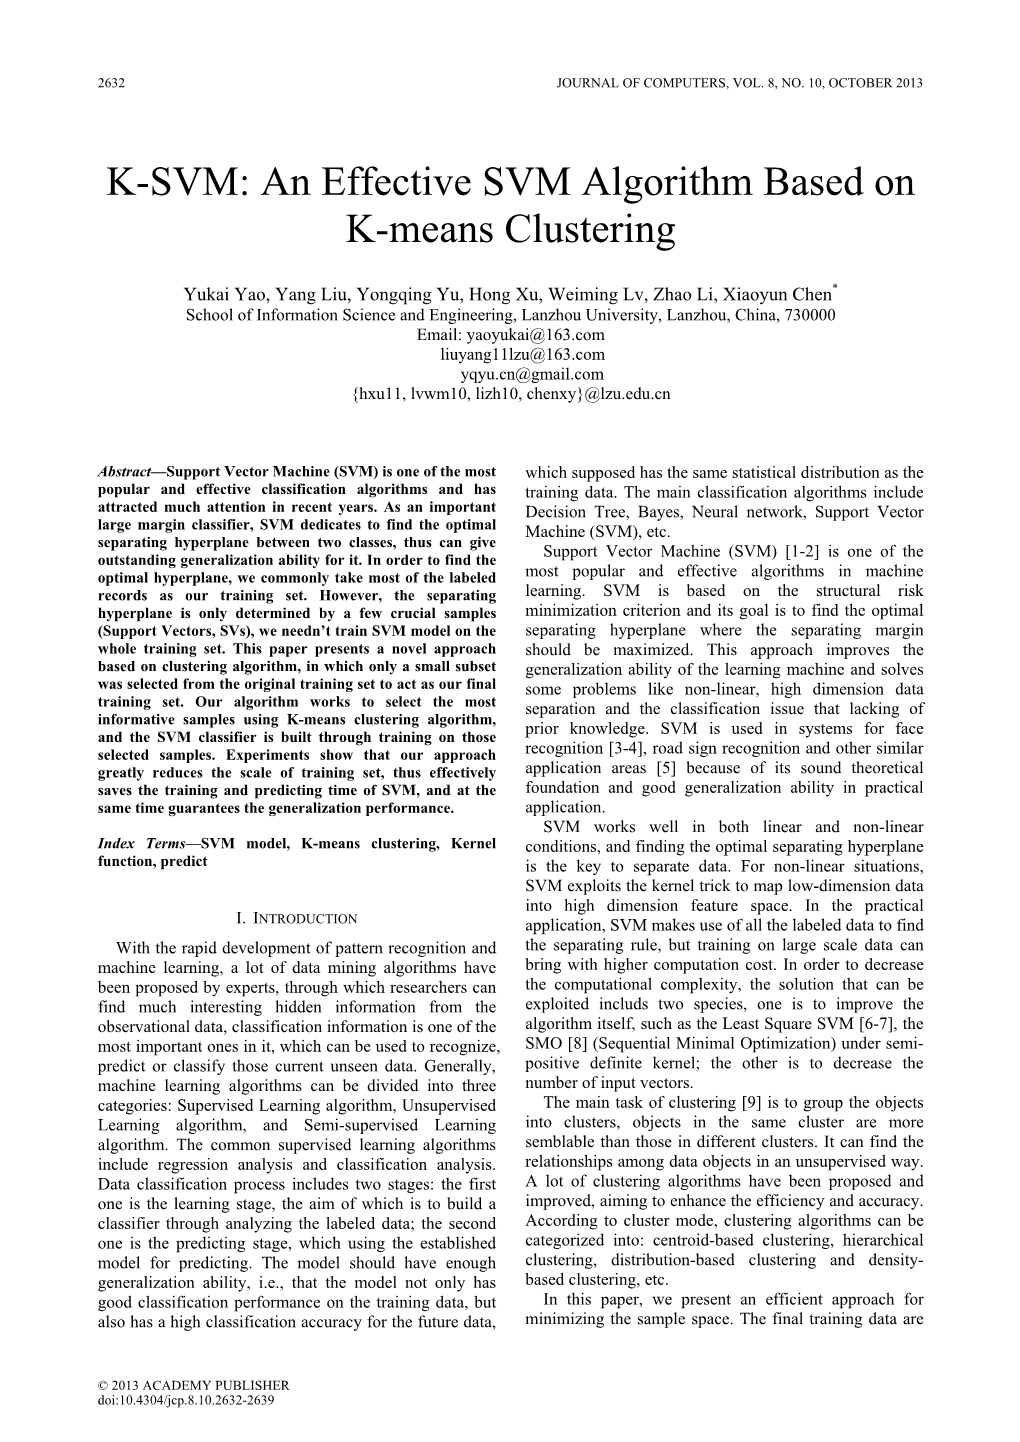 An Effective SVM Algorithm Based on K-Means Clustering